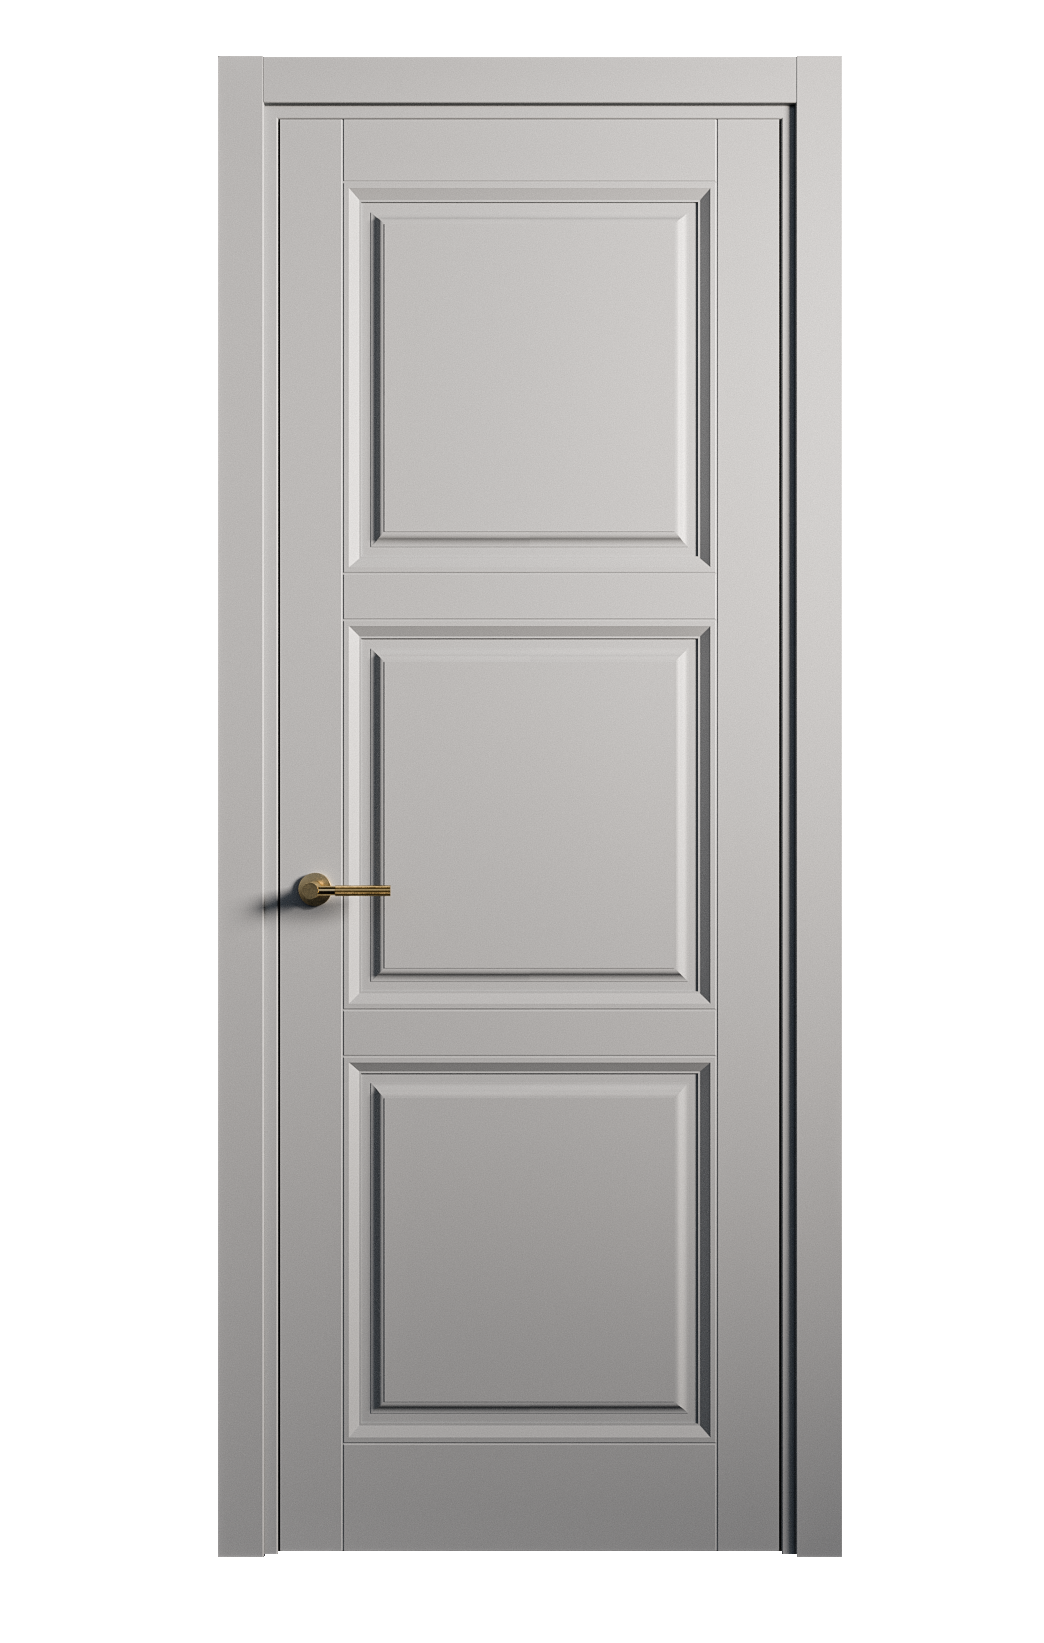 Межкомнатная дверь Venezia-3 глухая эмаль ral 7040 25753